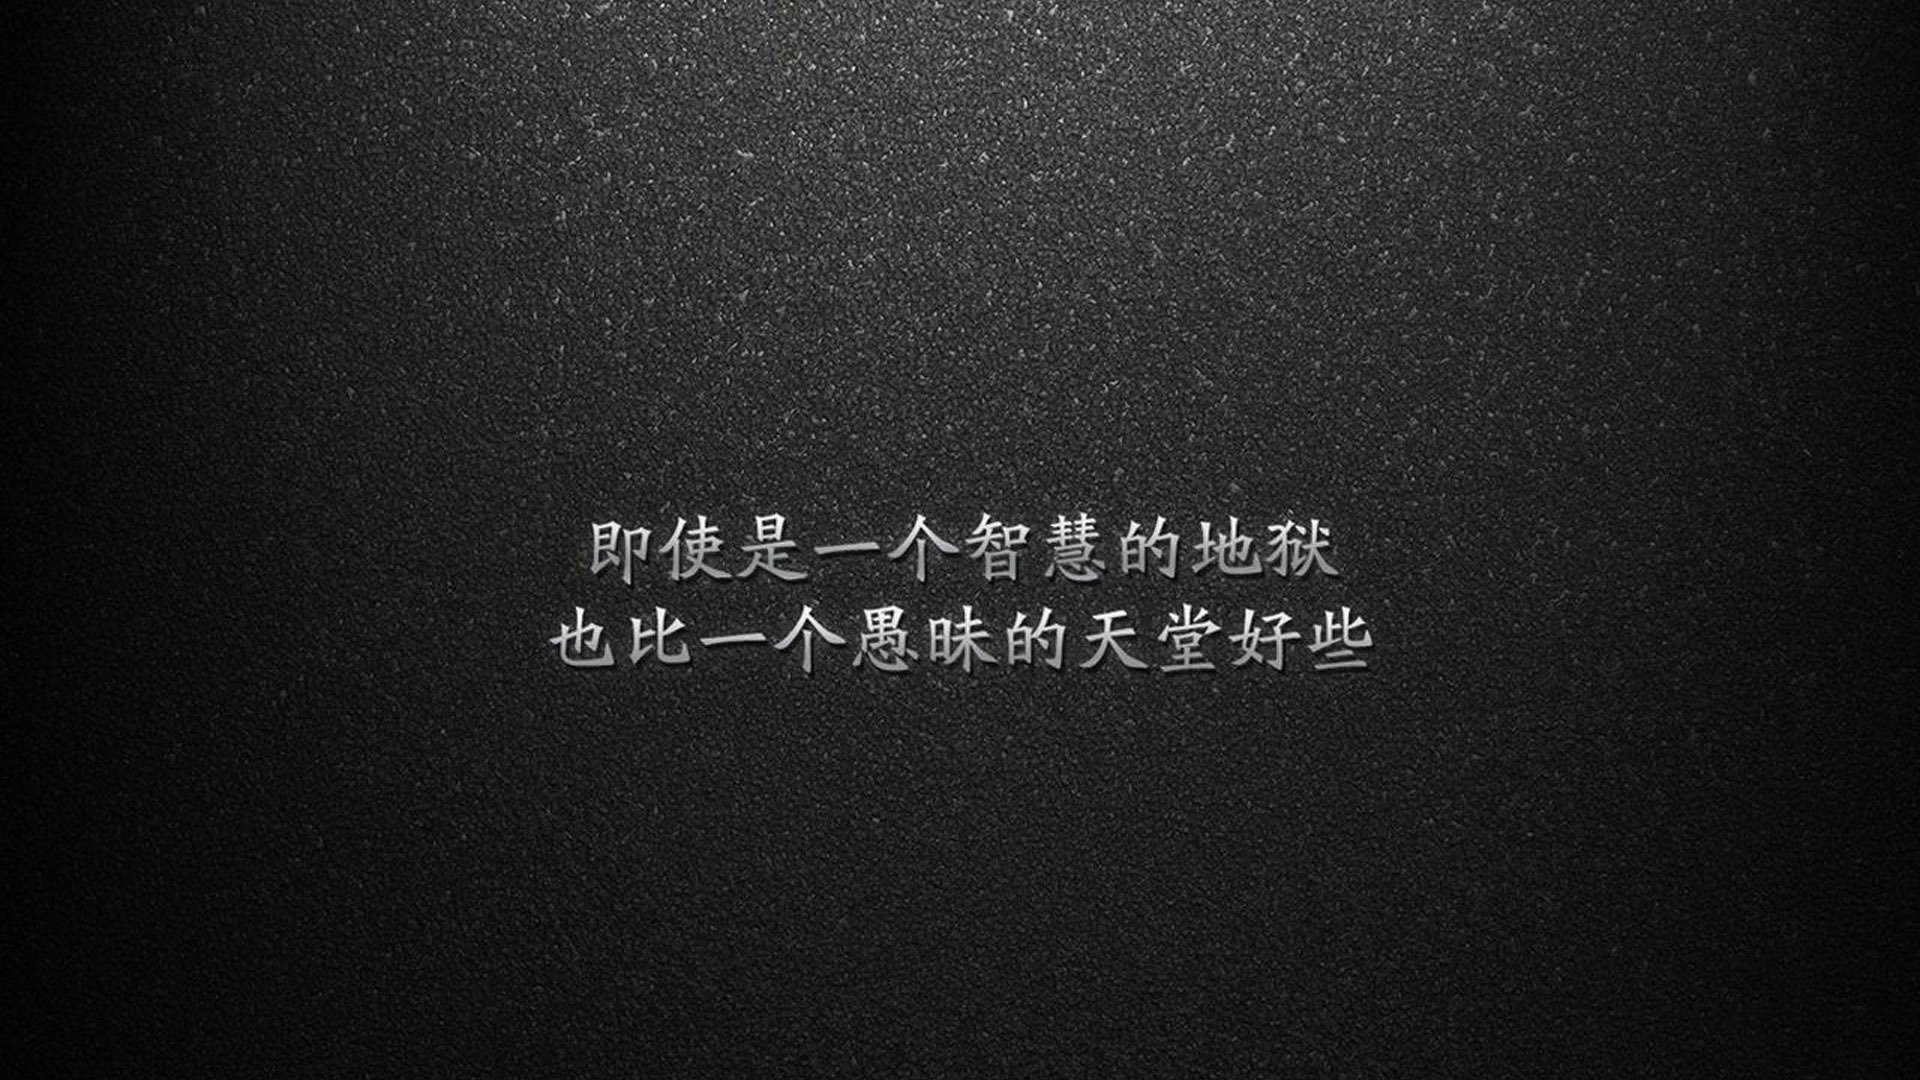 文字 忧伤 文字控壁纸【2】(其他静态壁纸) - 静态壁纸下载 - 元气壁纸